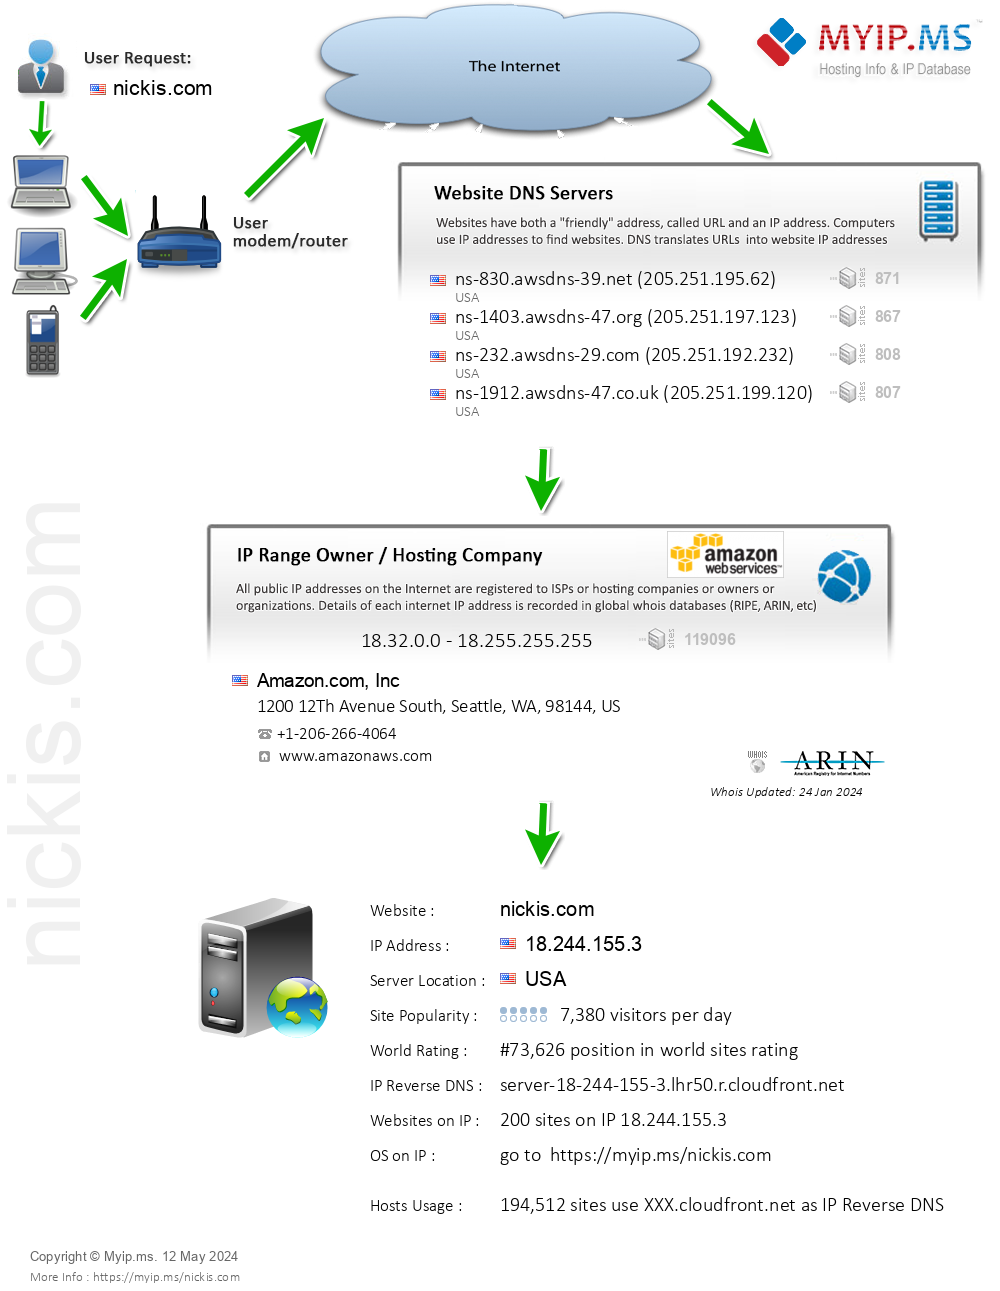 Nickis.com - Website Hosting Visual IP Diagram